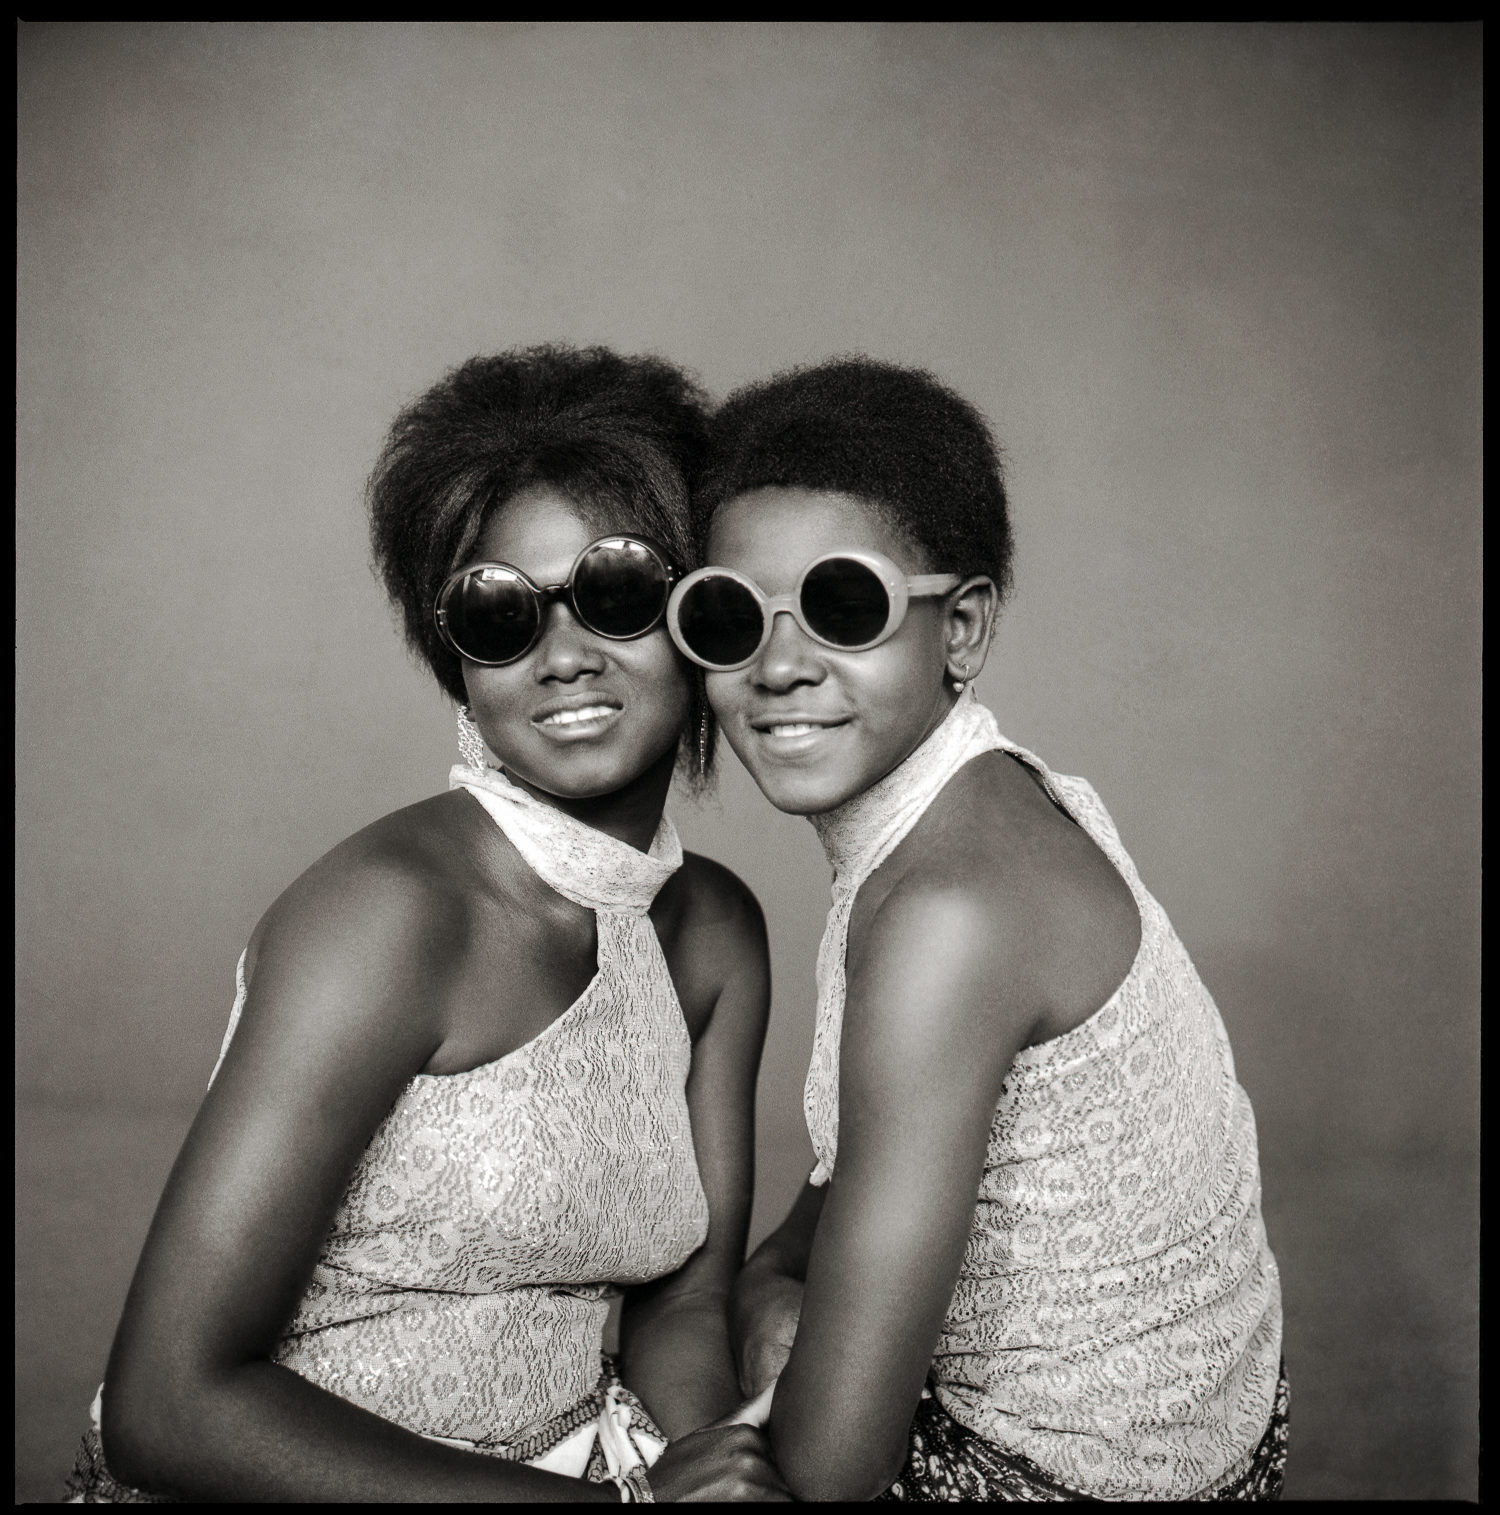 © photo Abdourahmane Sakaly, Deux jeunes filles Yé-Yé avec lunettes de soleil, Bamako, Mali vers 1965